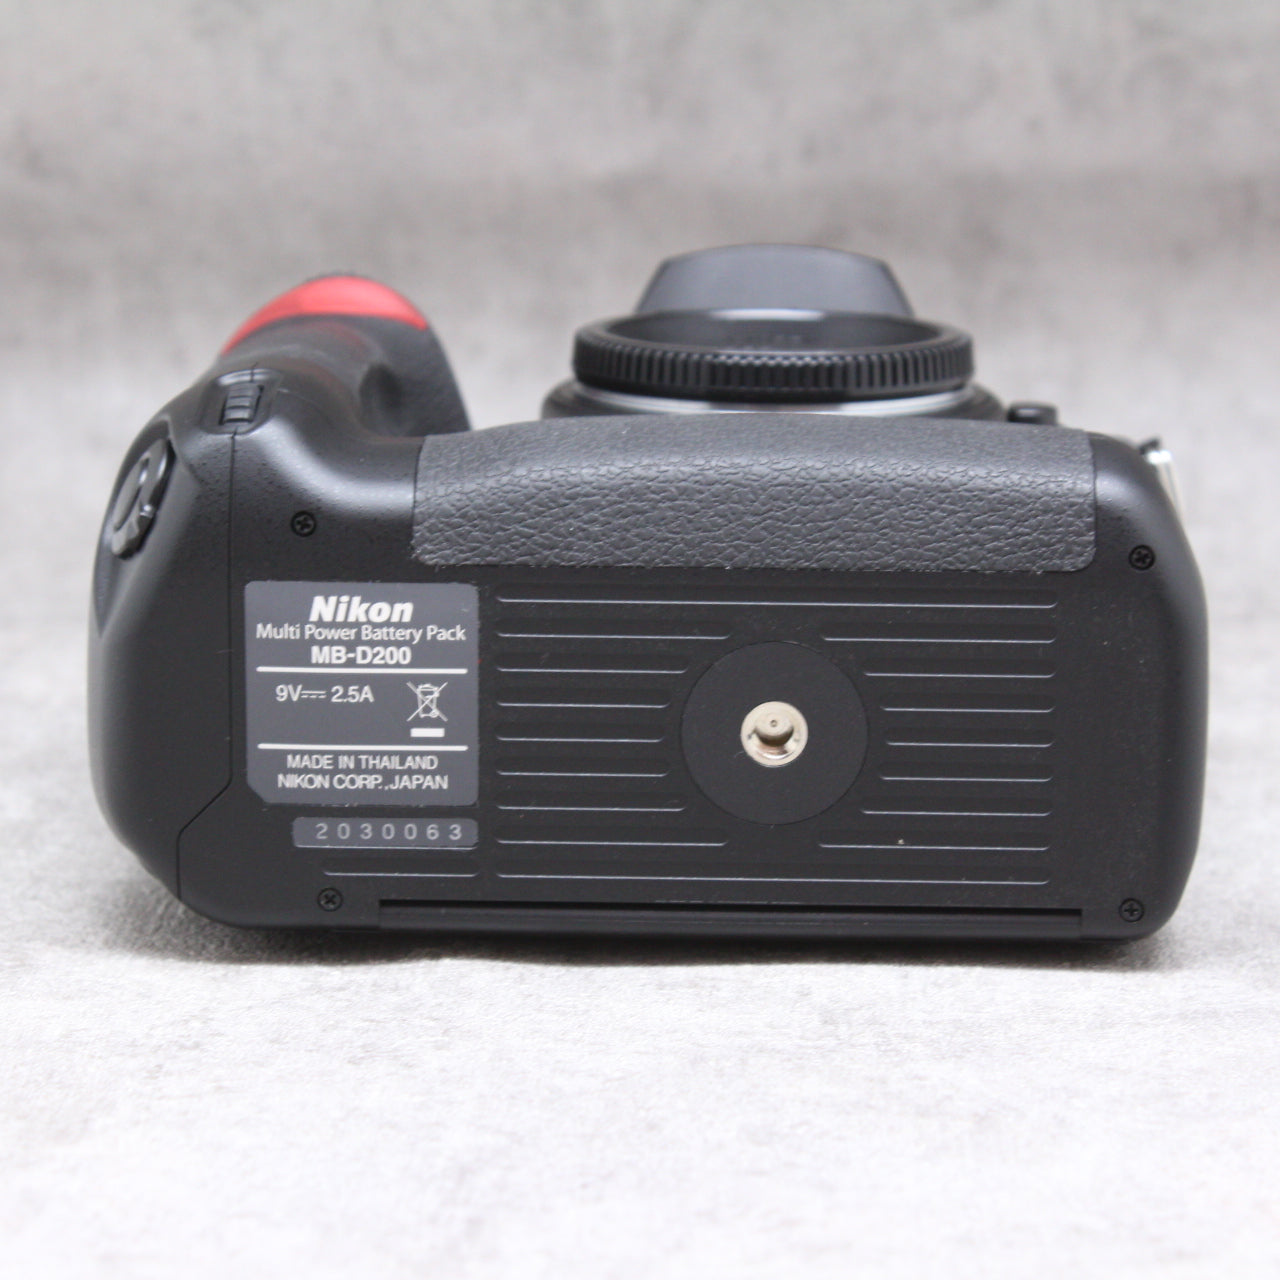 中古品 Nikon D200 ボディ + MB-D200 【11月15日(火)のYouTube生配信でご紹介】